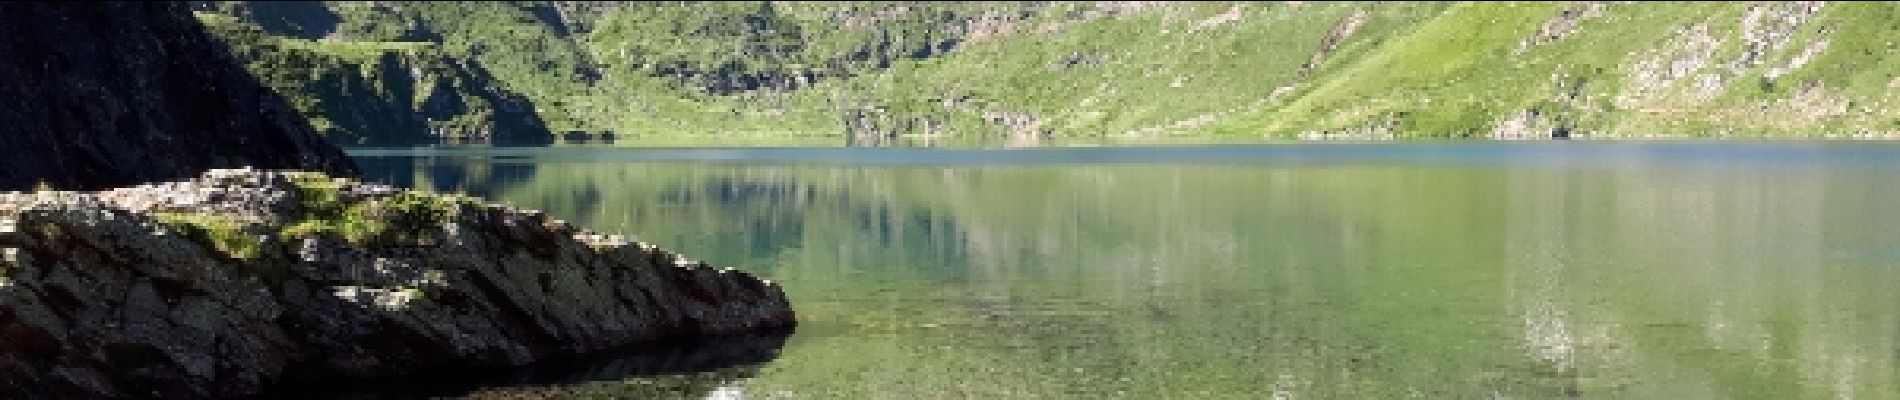 Percorso Marcia Bagnères-de-Bigorre - Chiroulet,lac bleu,col de Bareilles,lac d'outre,Chiroulet - Photo